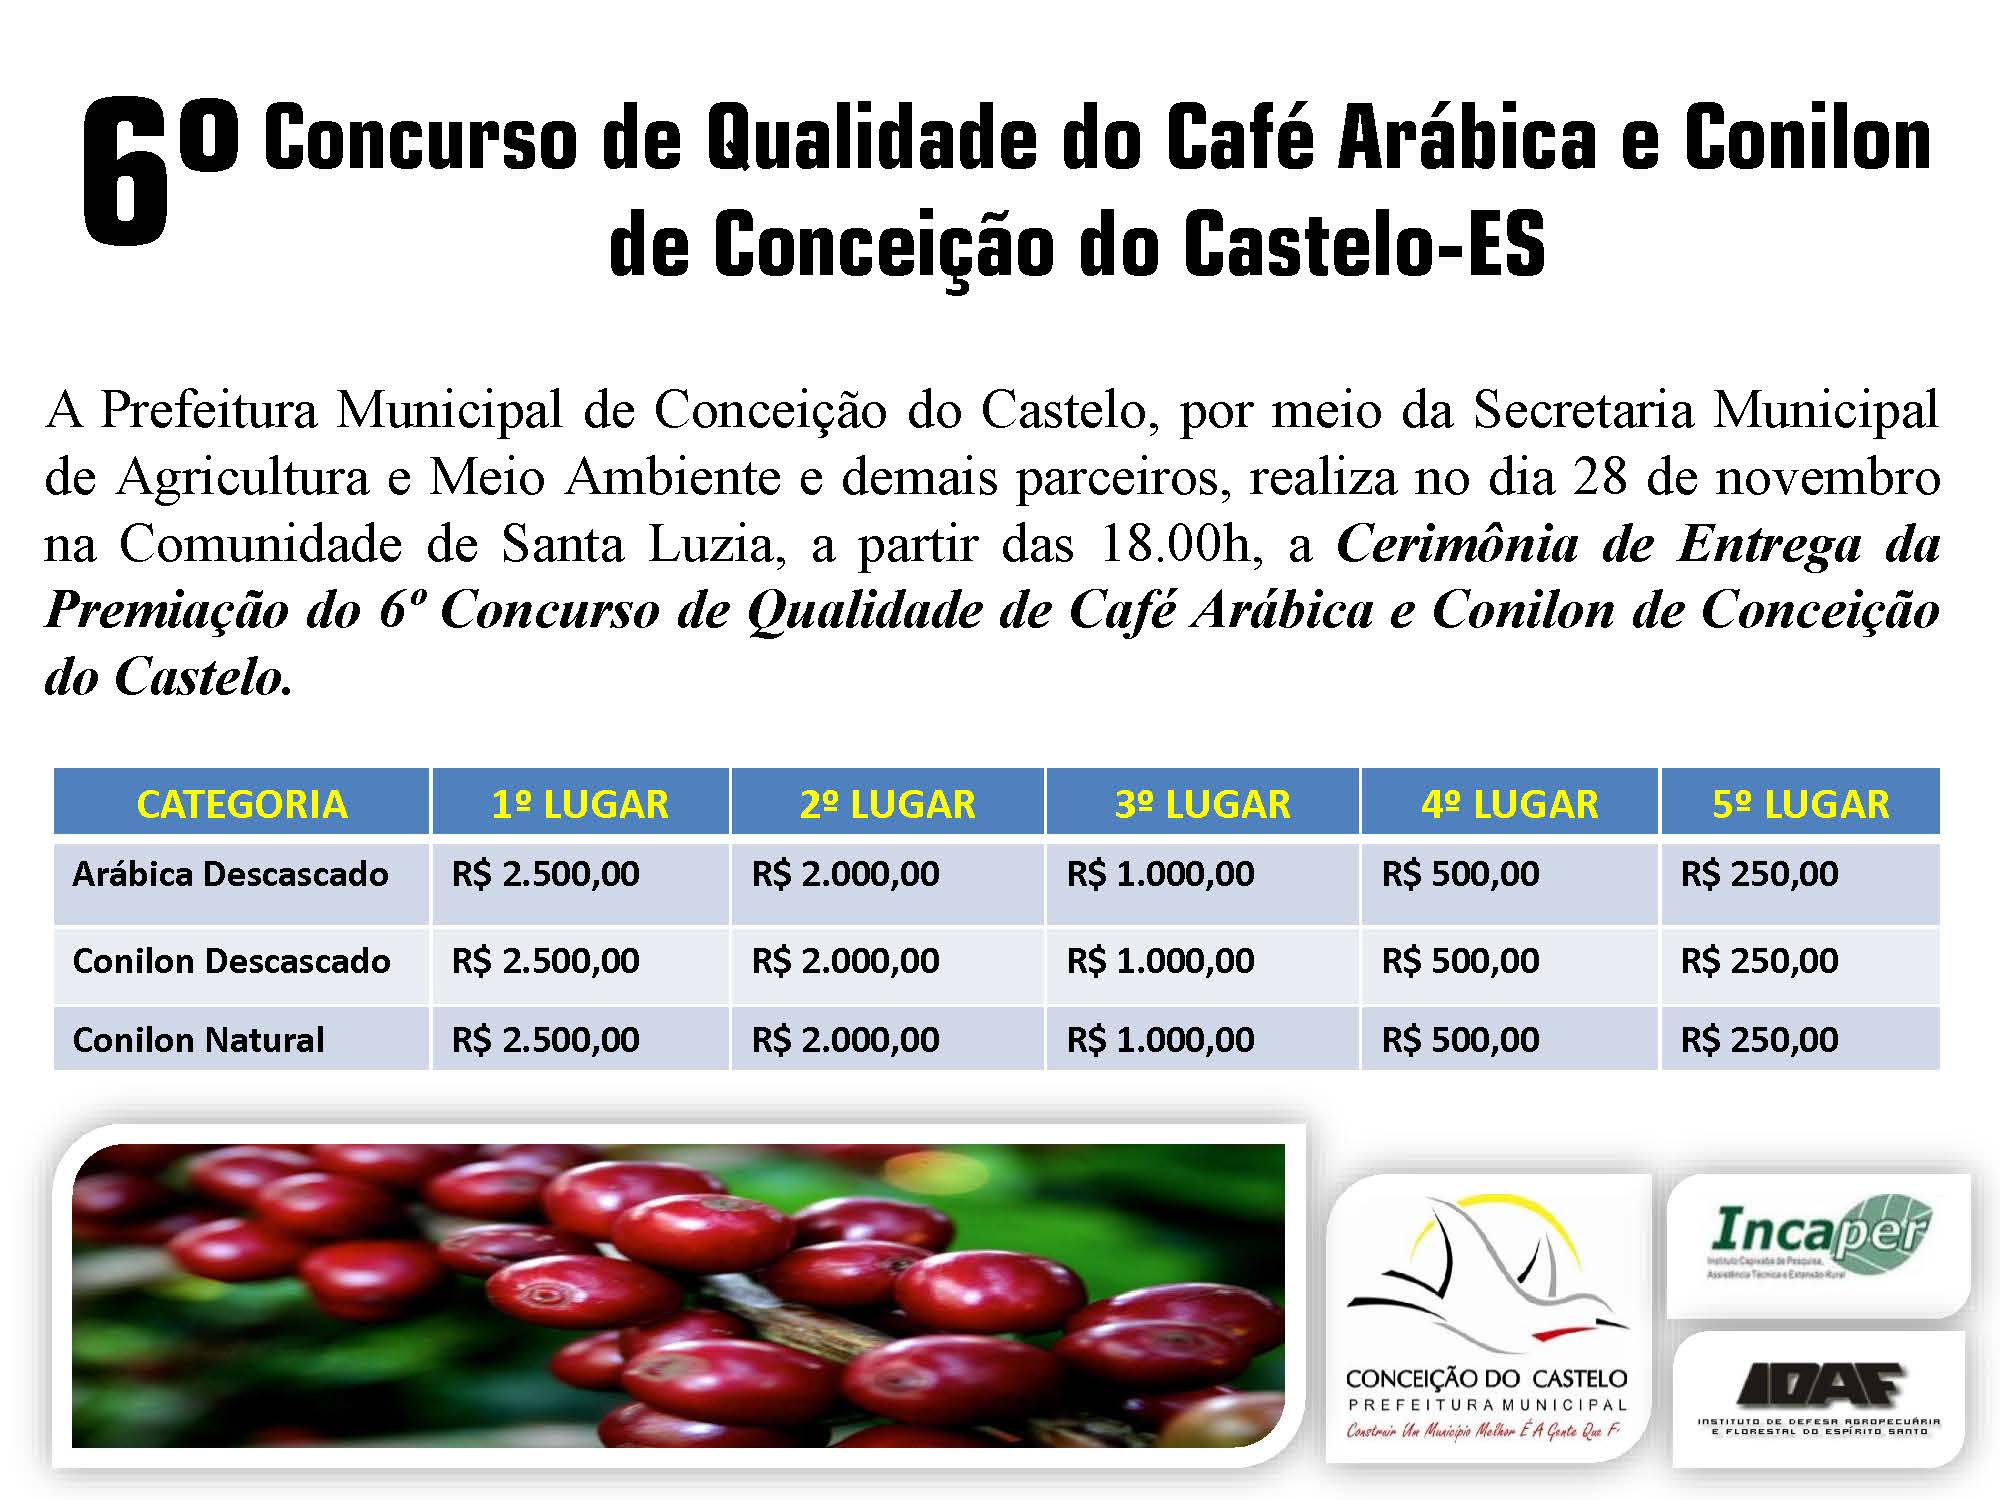 6º Concurso de Qualidade do Café Arábica e Conilon de Conceição do Castelo no dia 28 de novembro